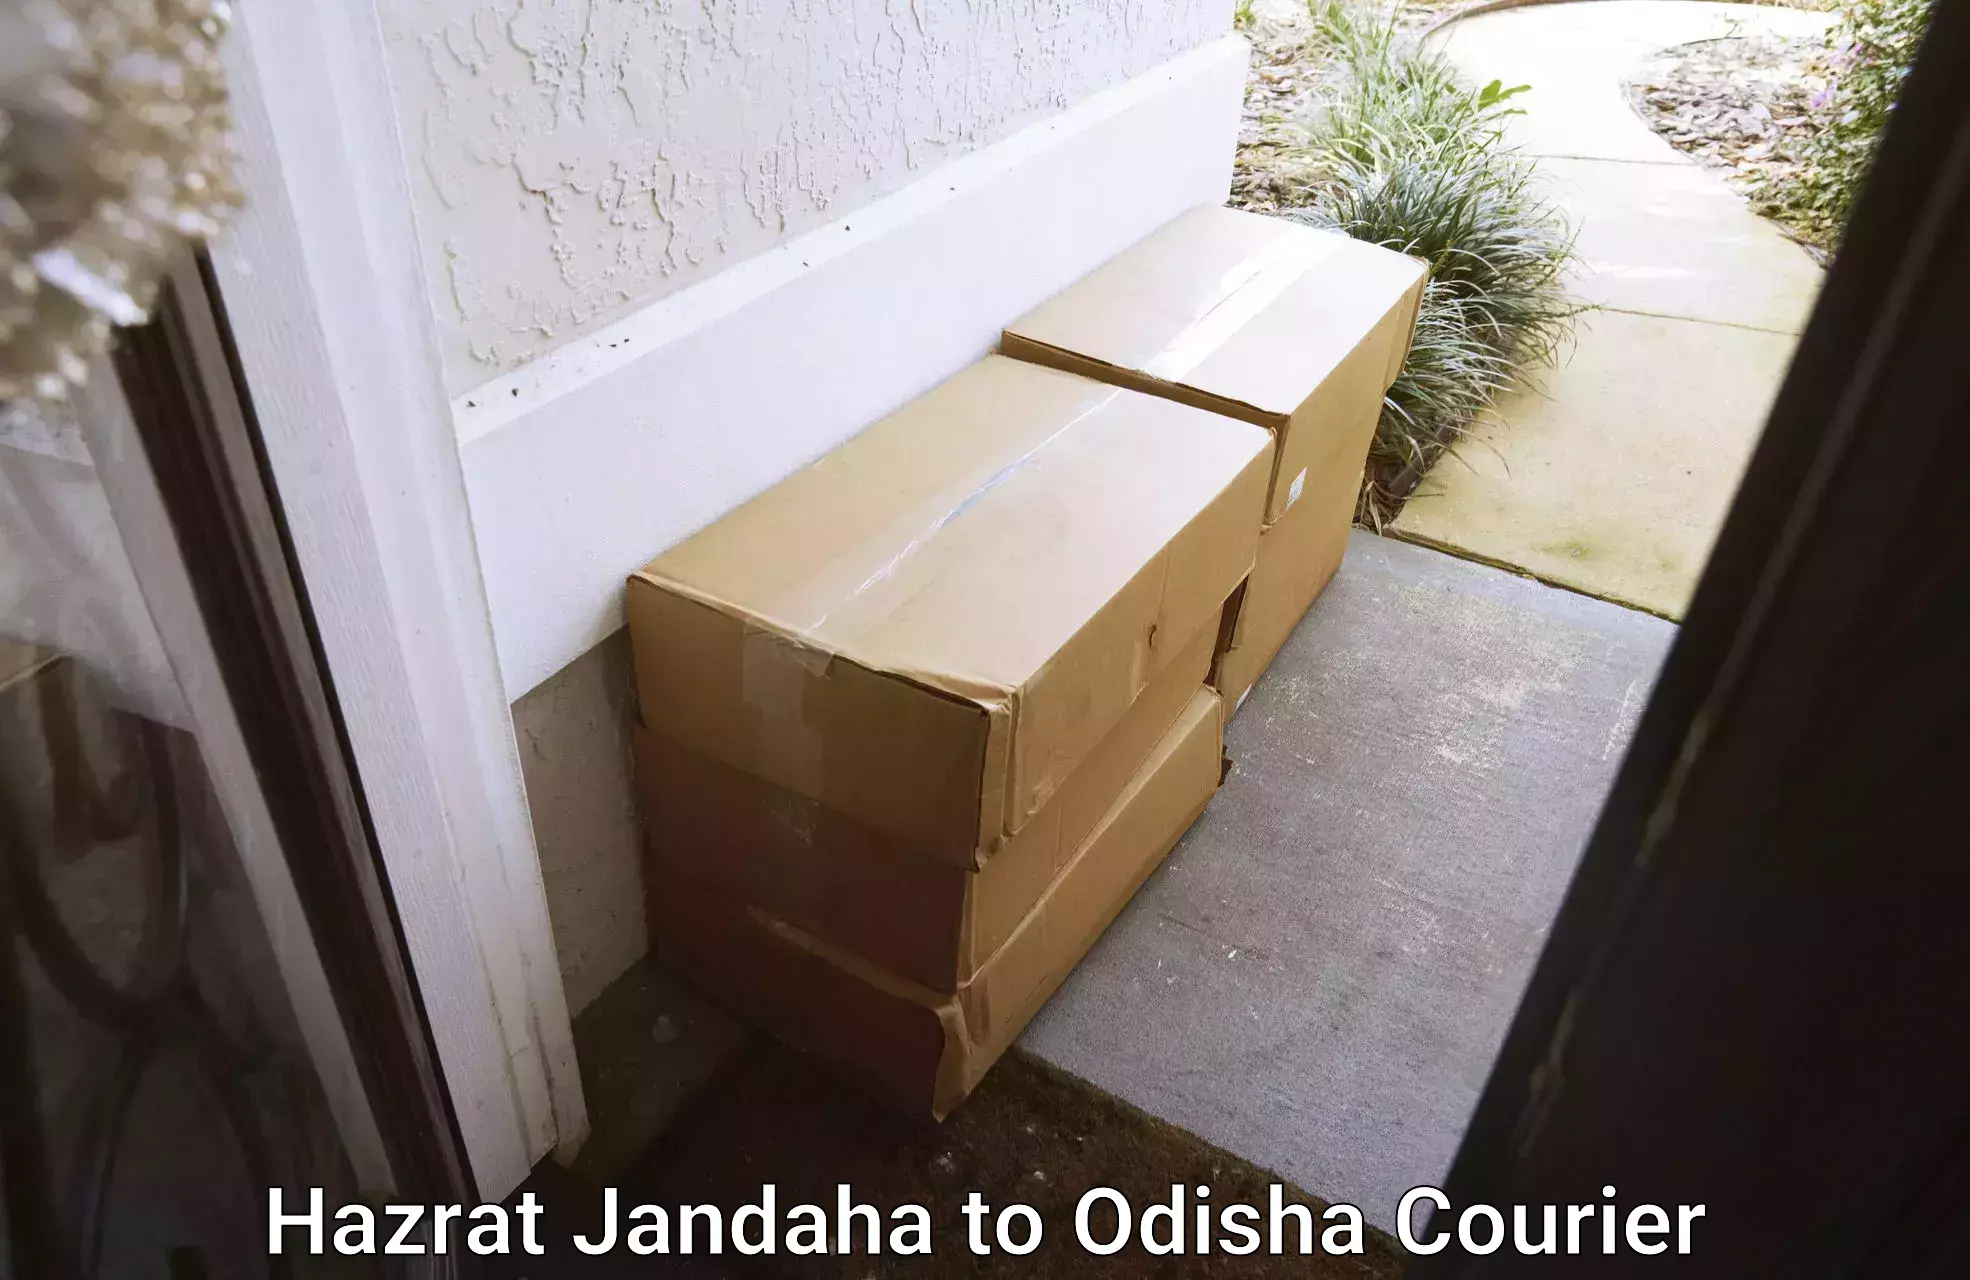 Quality household movers Hazrat Jandaha to Odisha